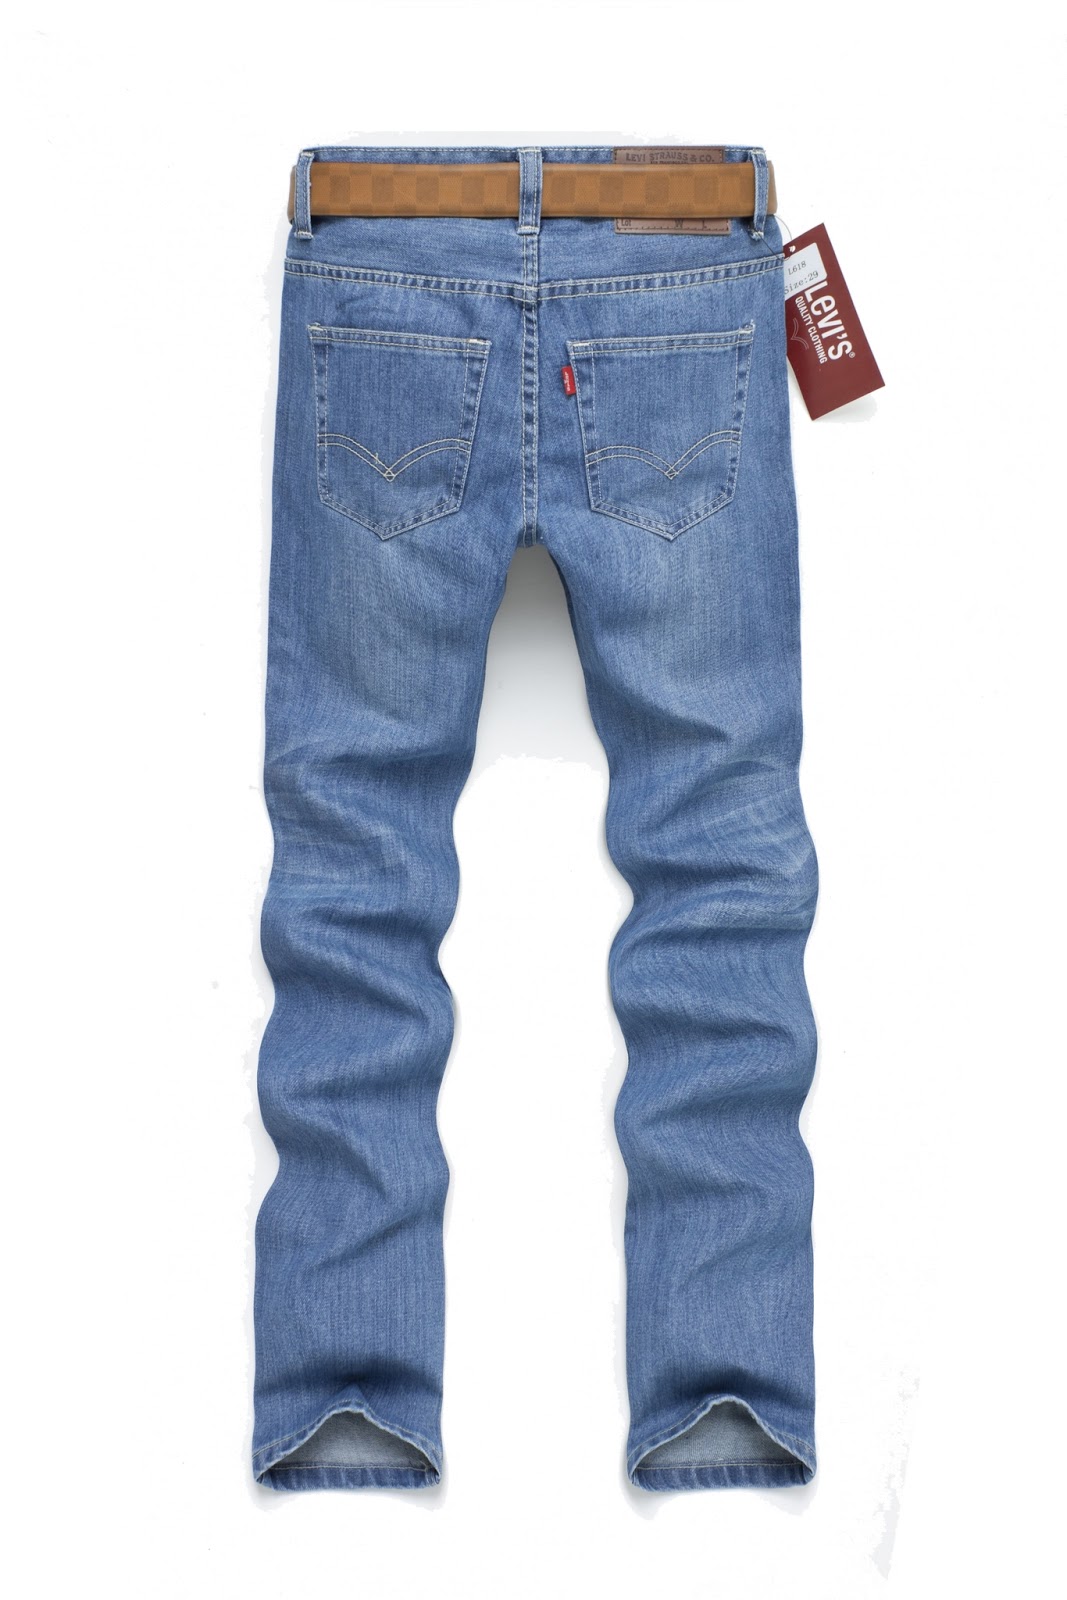 Global Stores Online: Levis Men's Jeans Straight Cut Light Blue 618